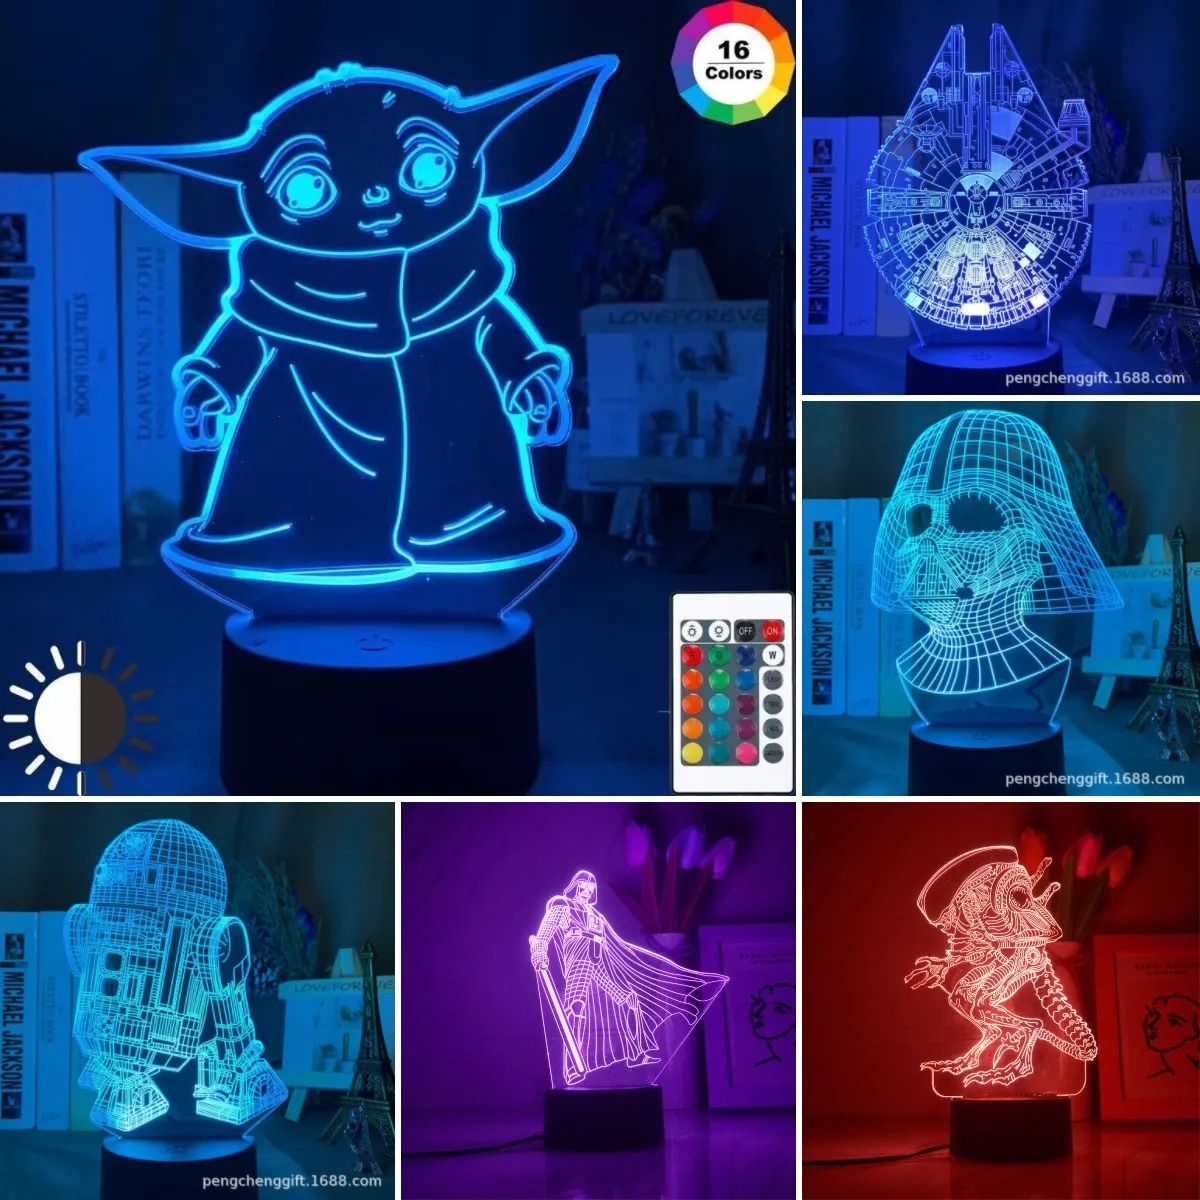 

Disney Star Wars Baby Yoda 3D LED Night Light Action Figure Table Lamp Stormtrooper Boba Fett Darth Vader Toys Nightlight